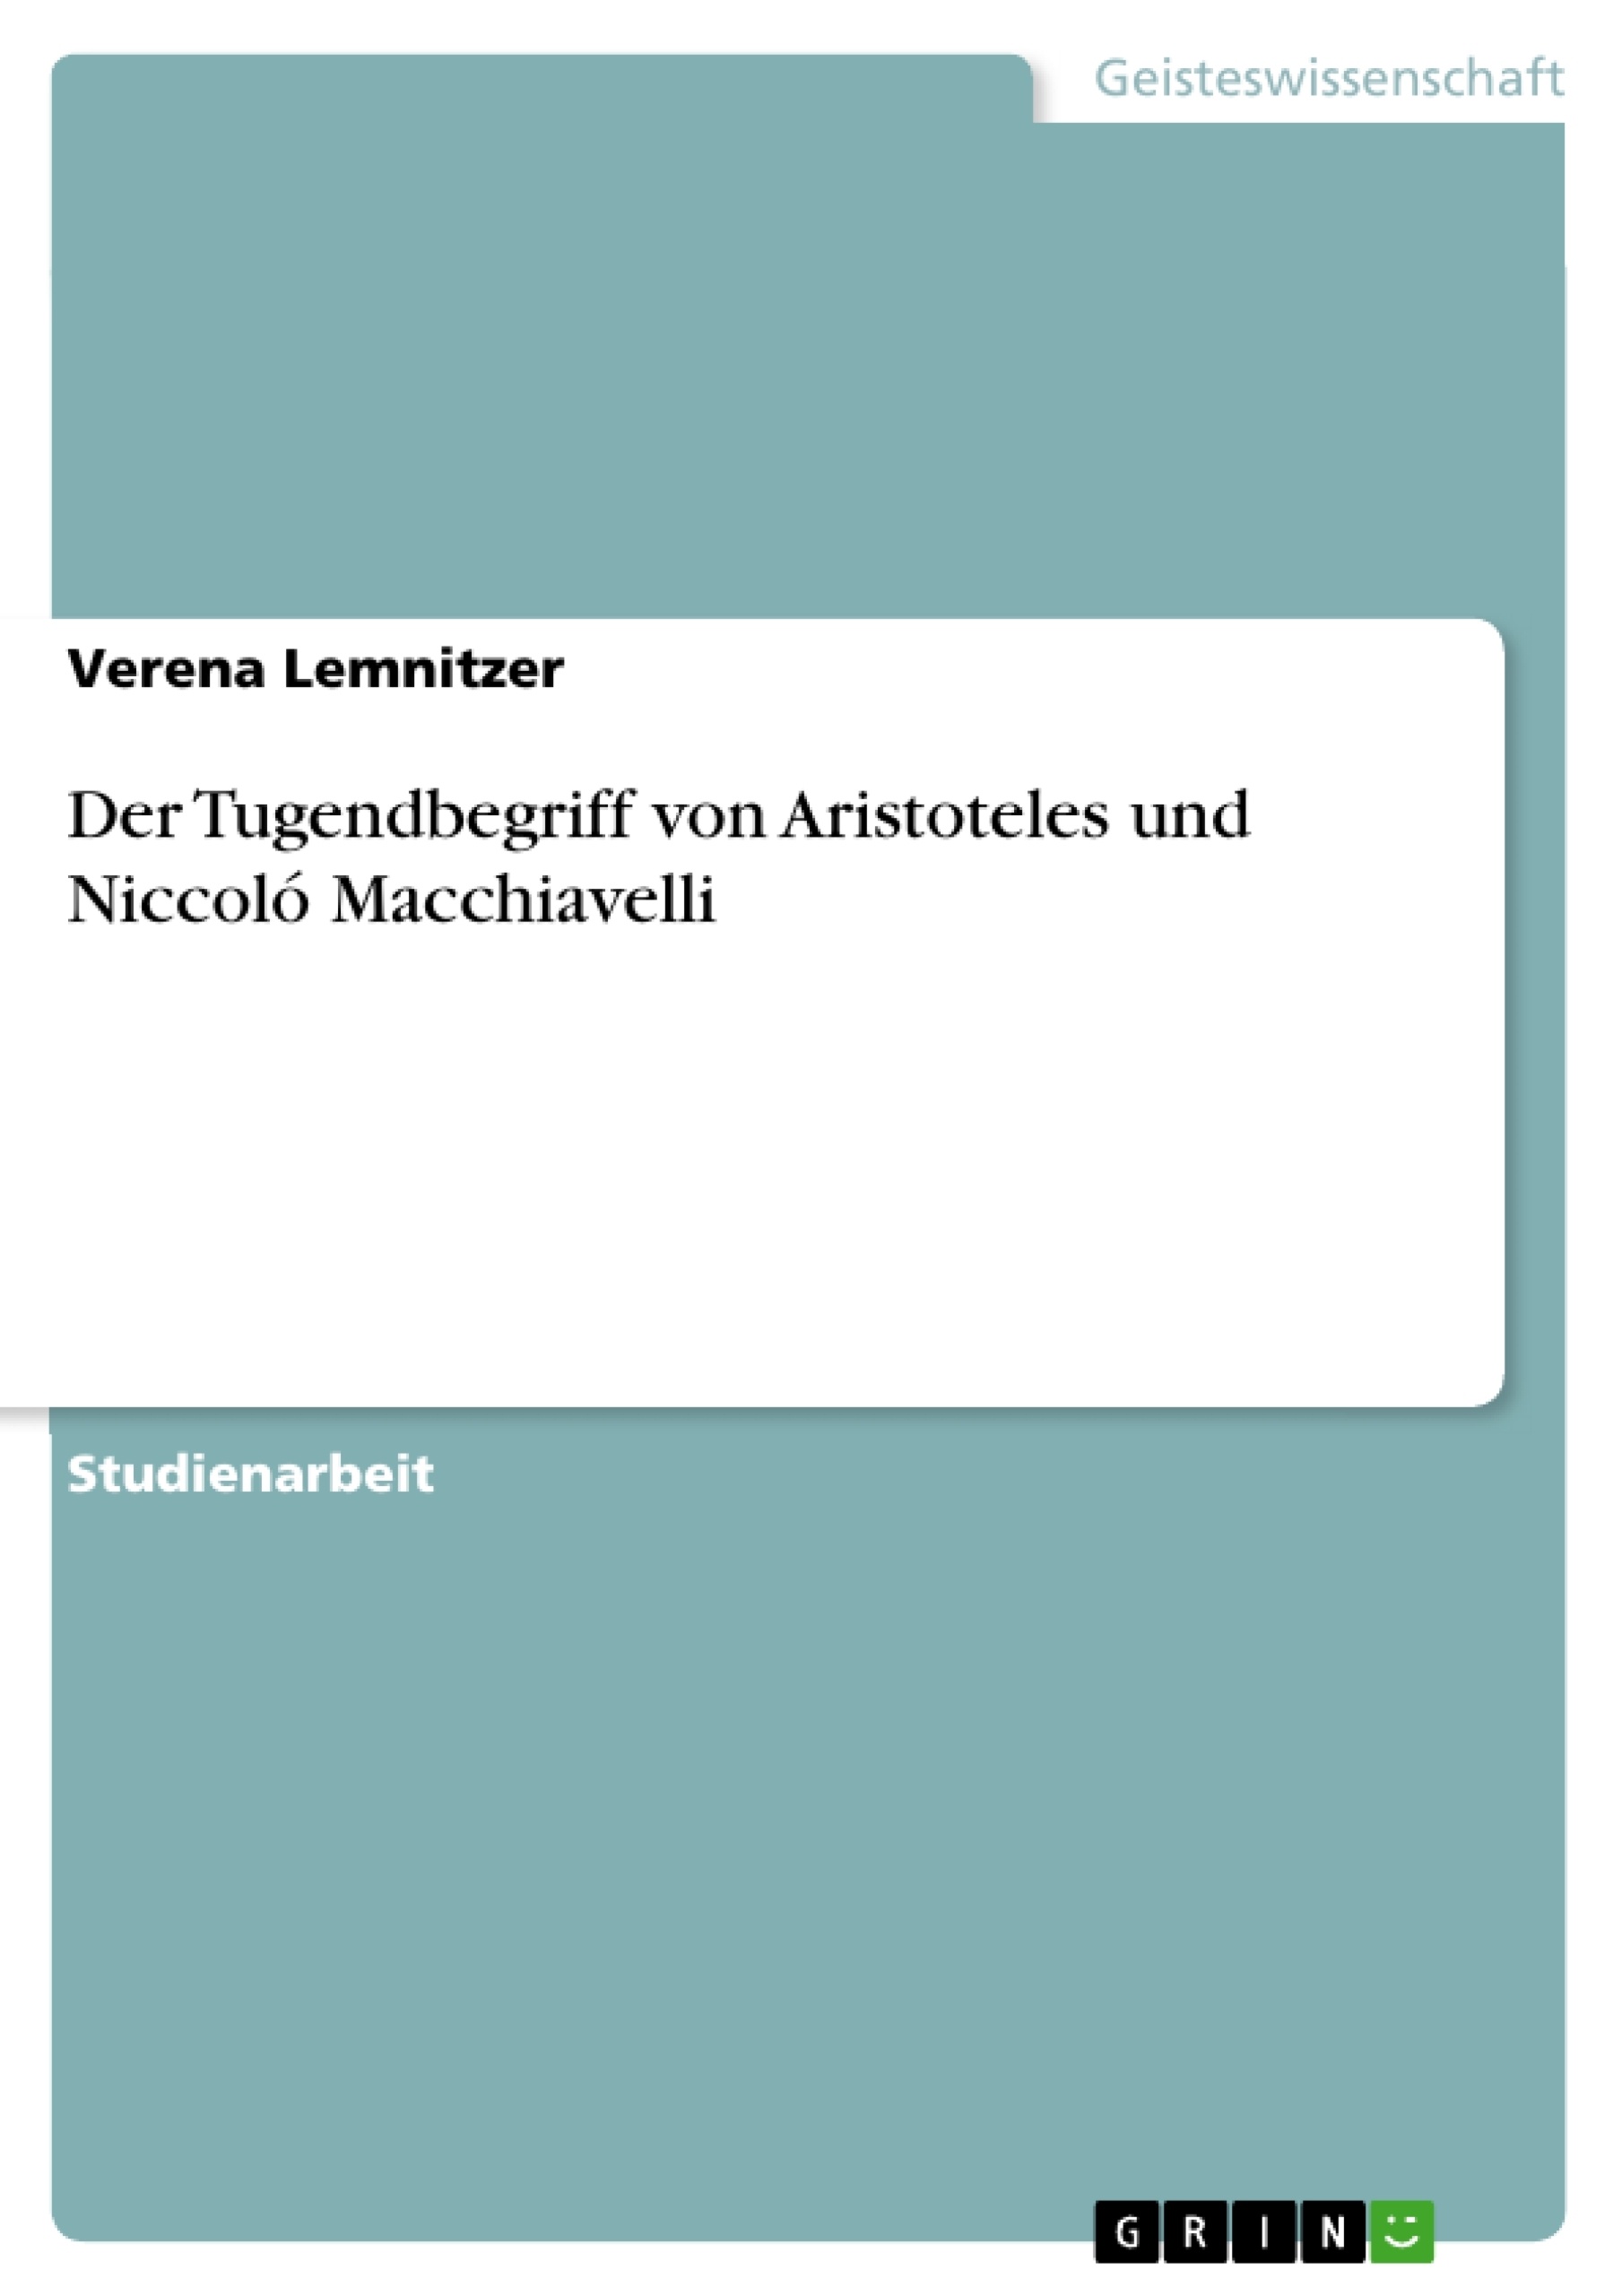 Título: Der Tugendbegriff von Aristoteles und Niccoló Macchiavelli